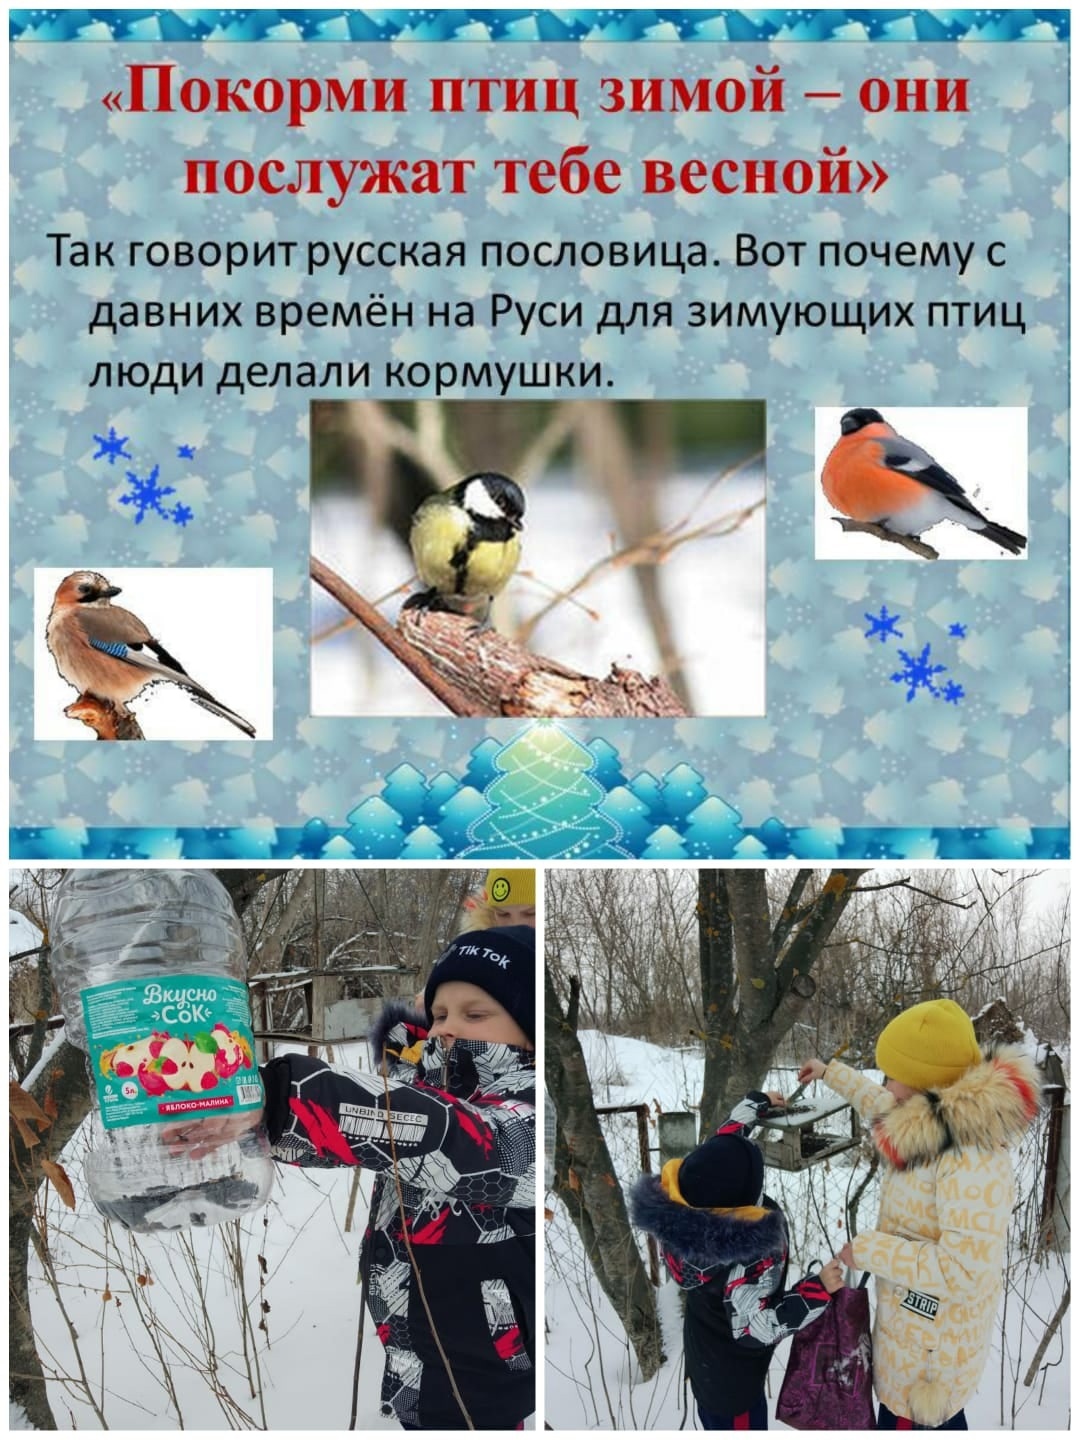 Участие в экологической акции &amp;quot;Покормите птиц зимой&amp;quot;..